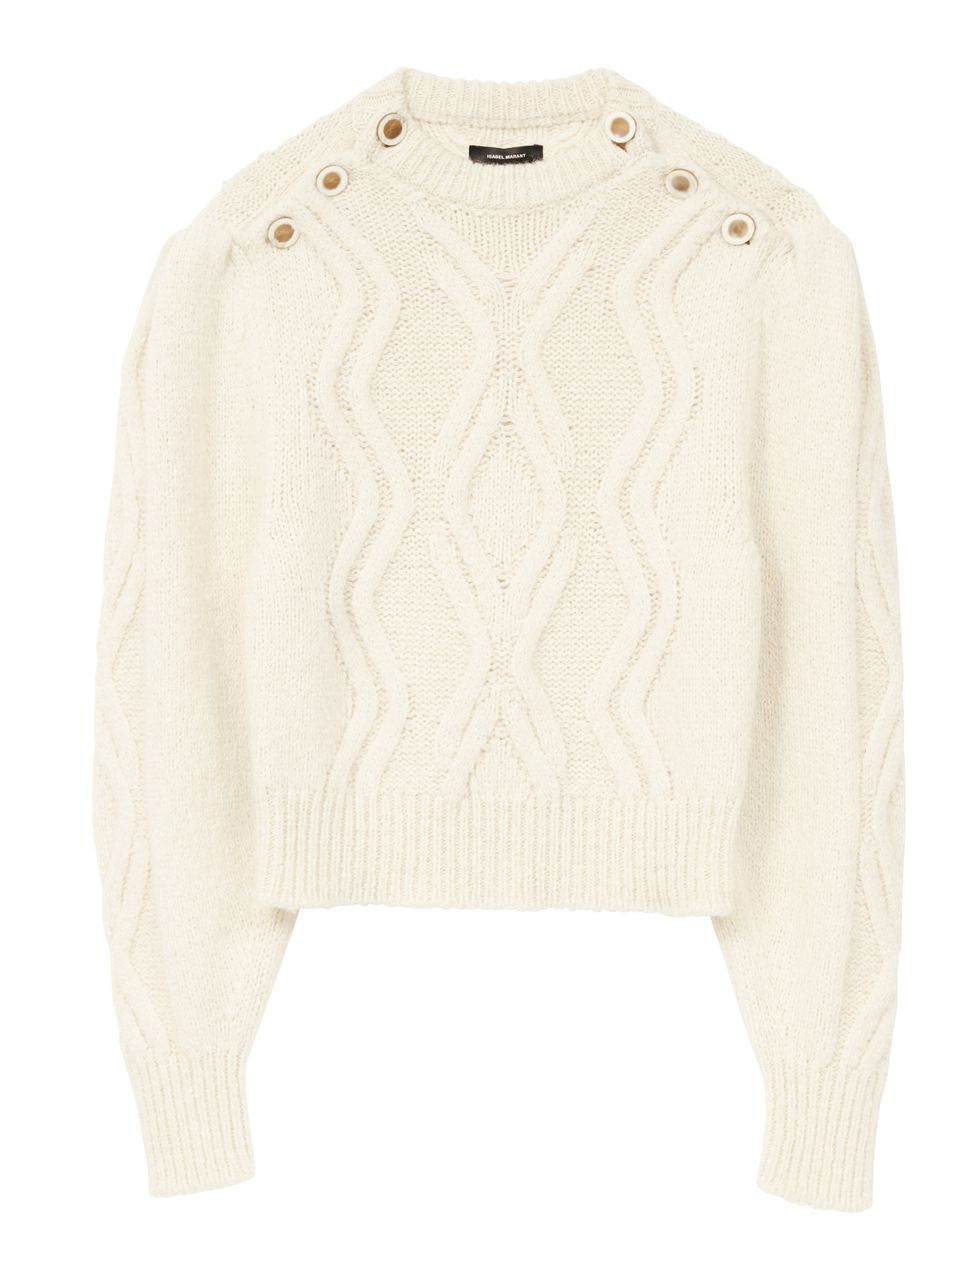 isabel marant maglione con trecce tendenza moda inverno 2021